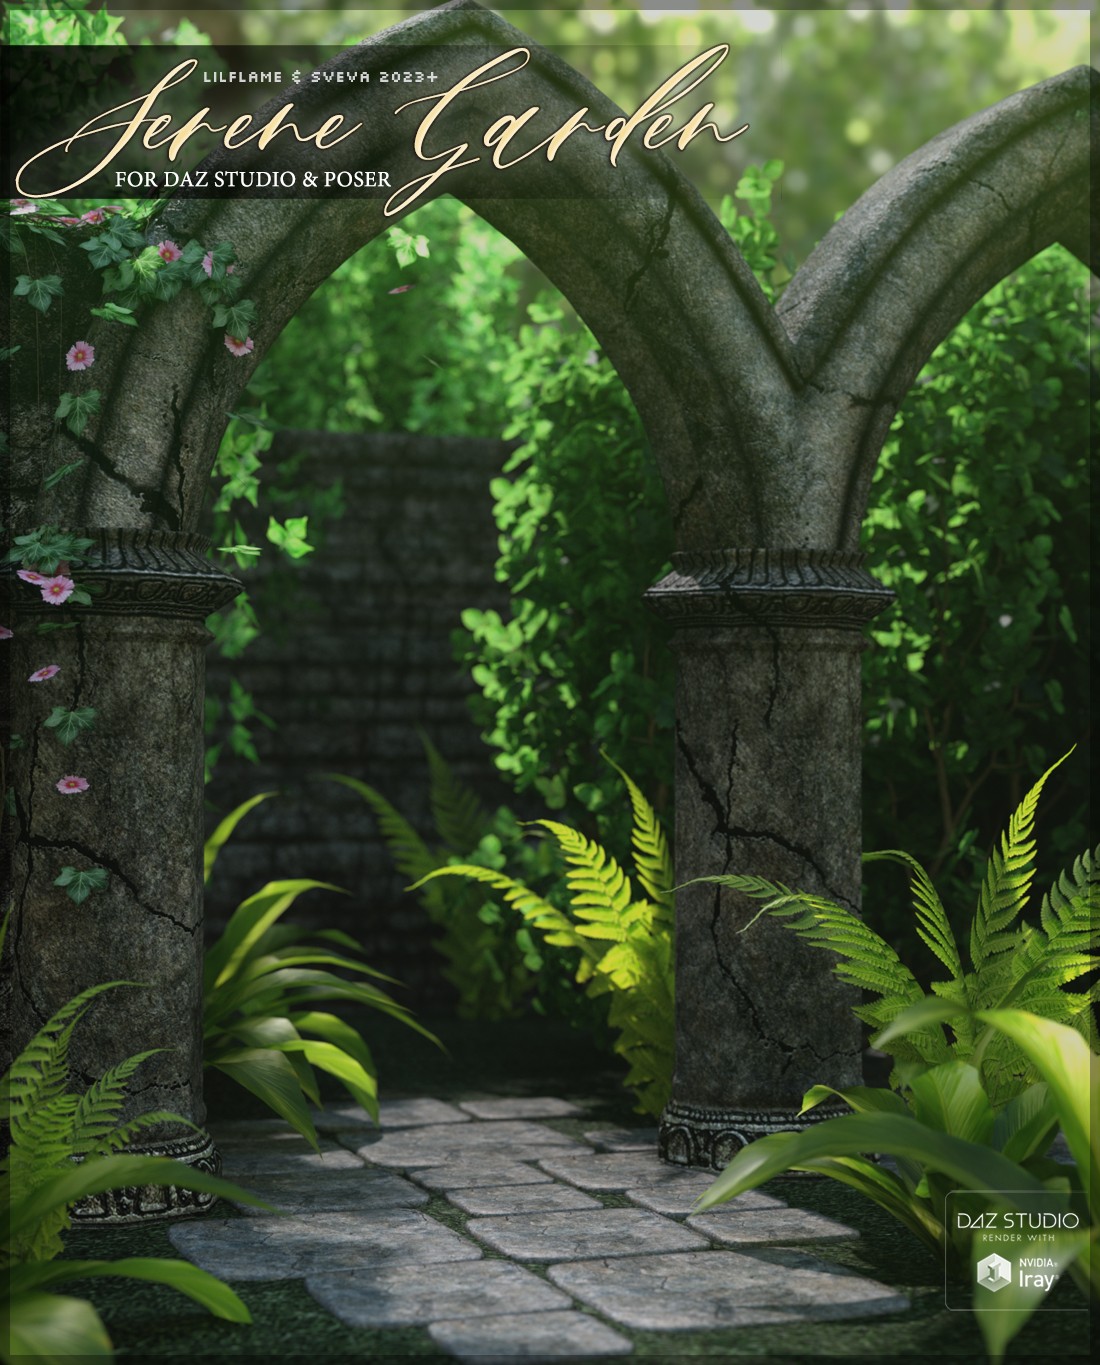 Serene Garden by: SvevaLilflame, 3D Models by Daz 3D